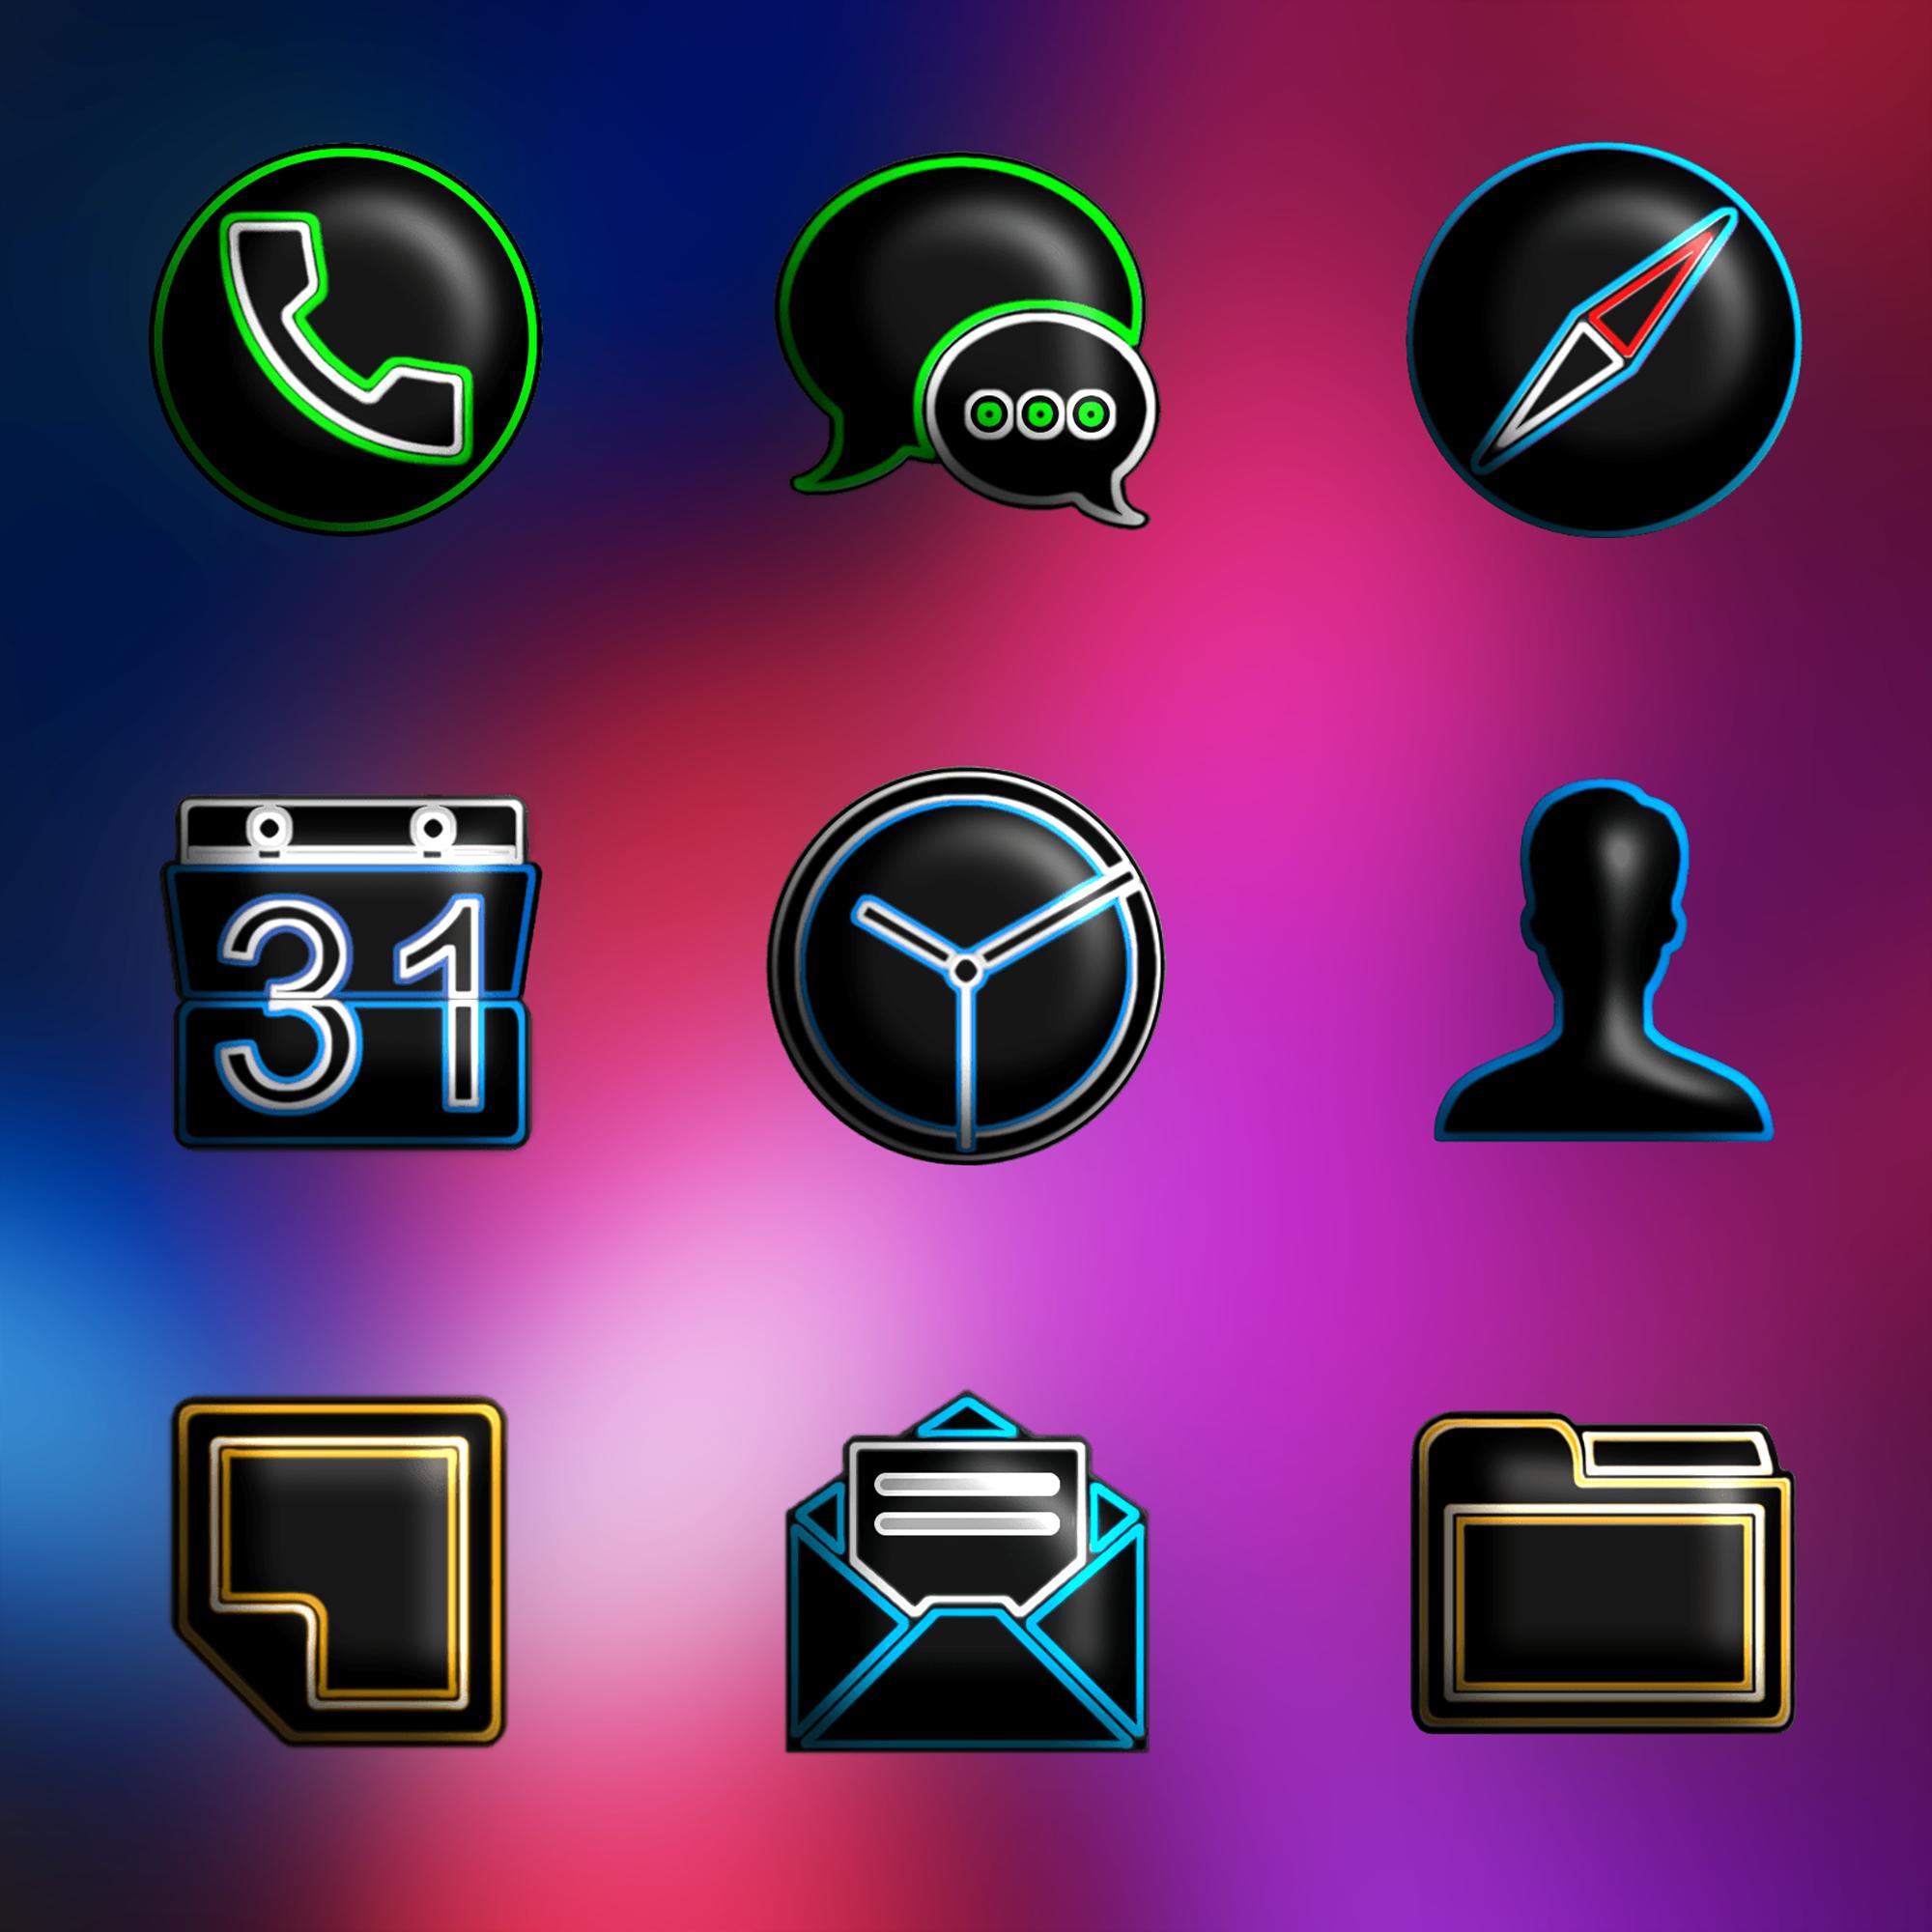 Icon pack studio pro. 3д иконки. Пак иконок для андроид. Лучшие иконки для андроид. 3д иконки для андроид.